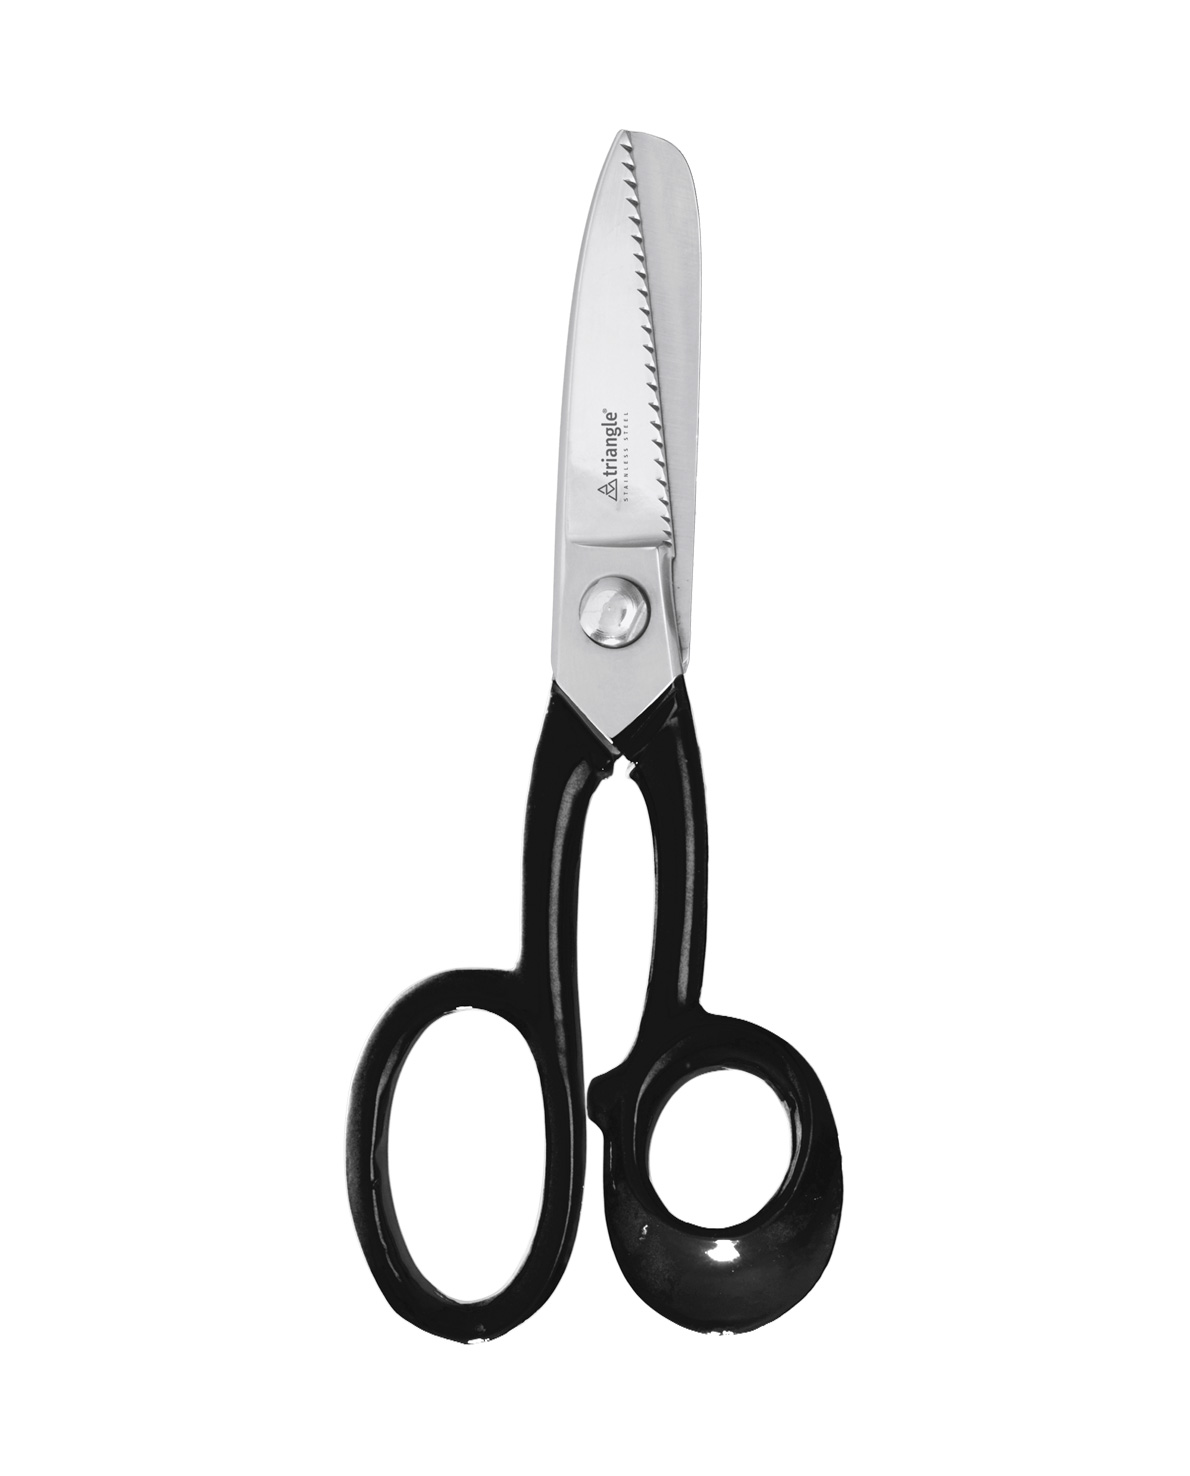 Triangle fin scissors 